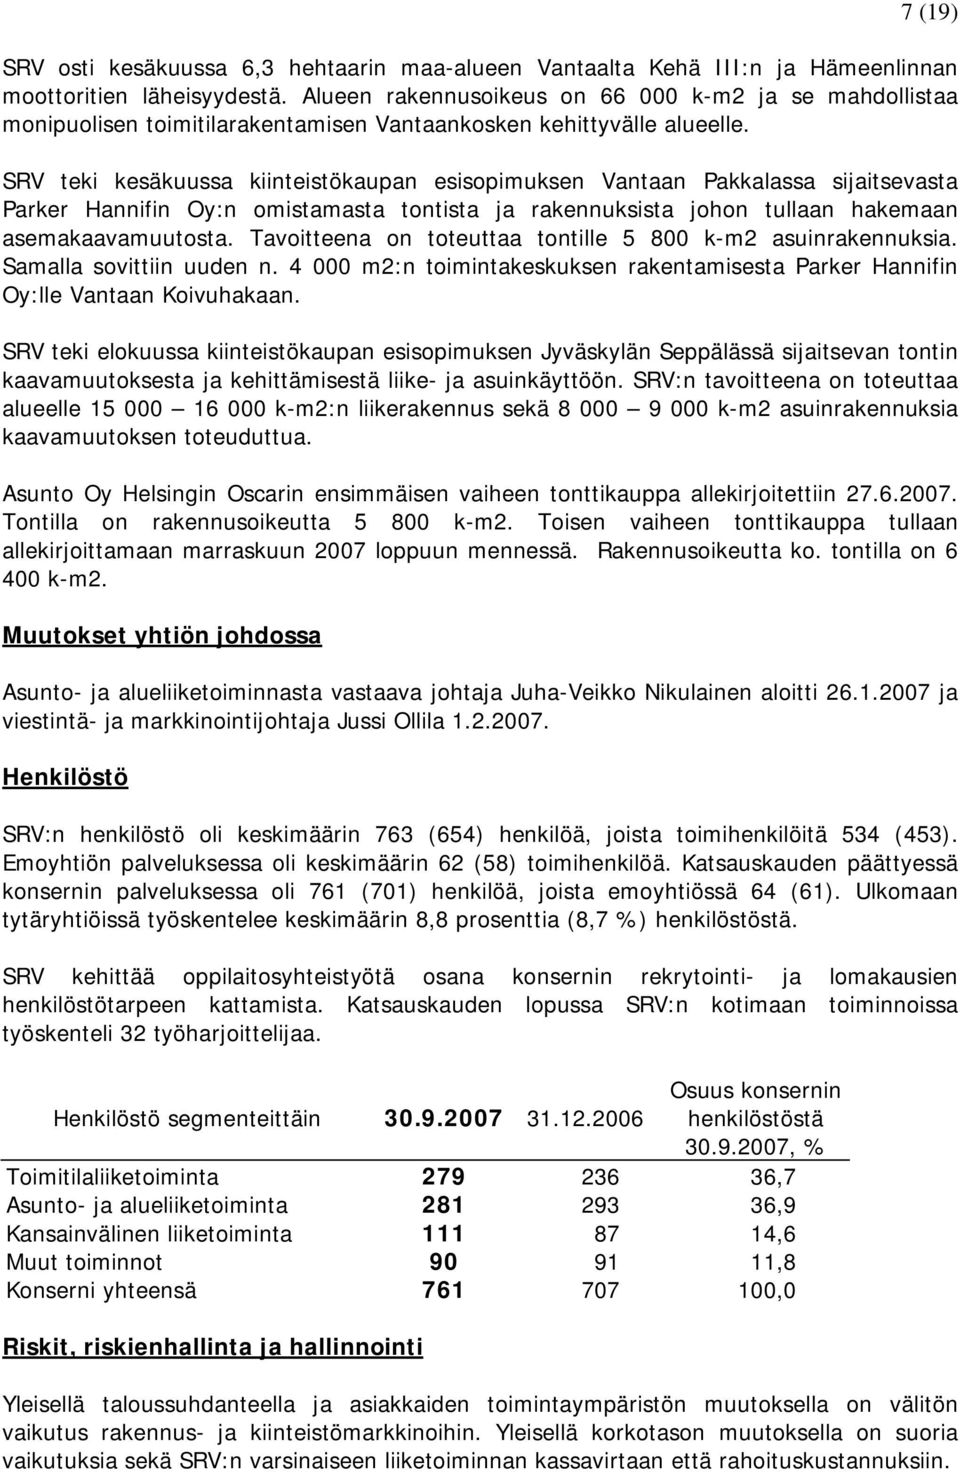 SRV teki kesäkuussa kiinteistökaupan esisopimuksen Vantaan Pakkalassa sijaitsevasta Parker Hannifin Oy:n omistamasta tontista ja rakennuksista johon tullaan hakemaan asemakaavamuutosta.